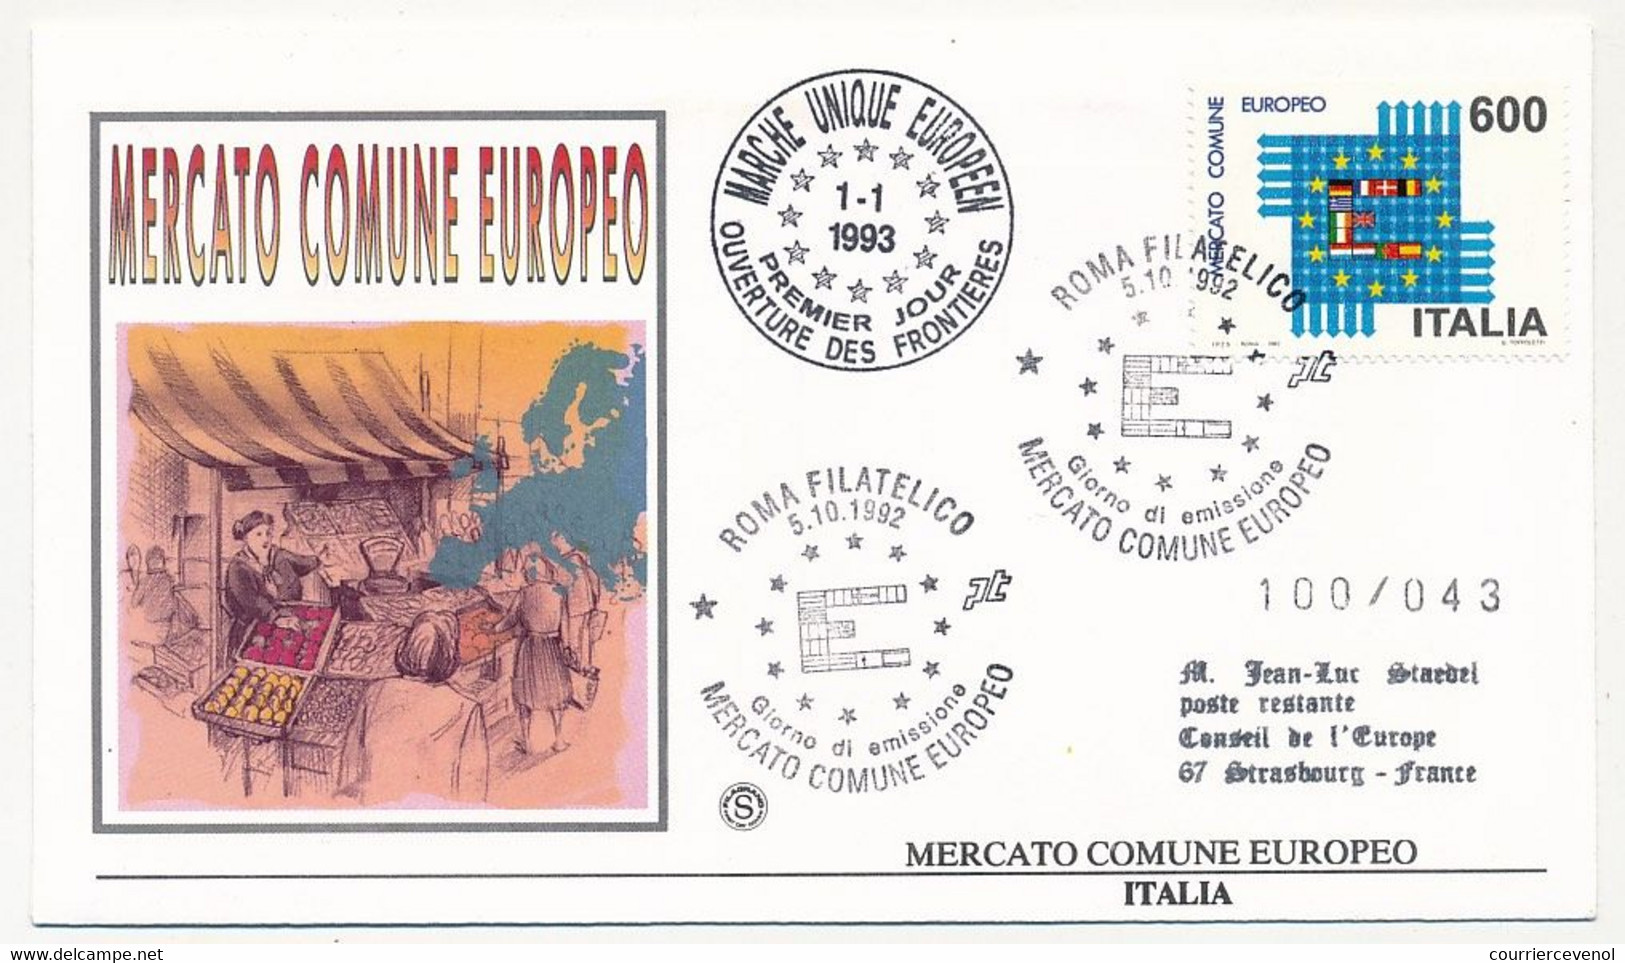 ITALIE - Enveloppe FDC - Mercato Comune Europeo (Marché Unique Européen) - Roma 5/10/1992 - Idées Européennes